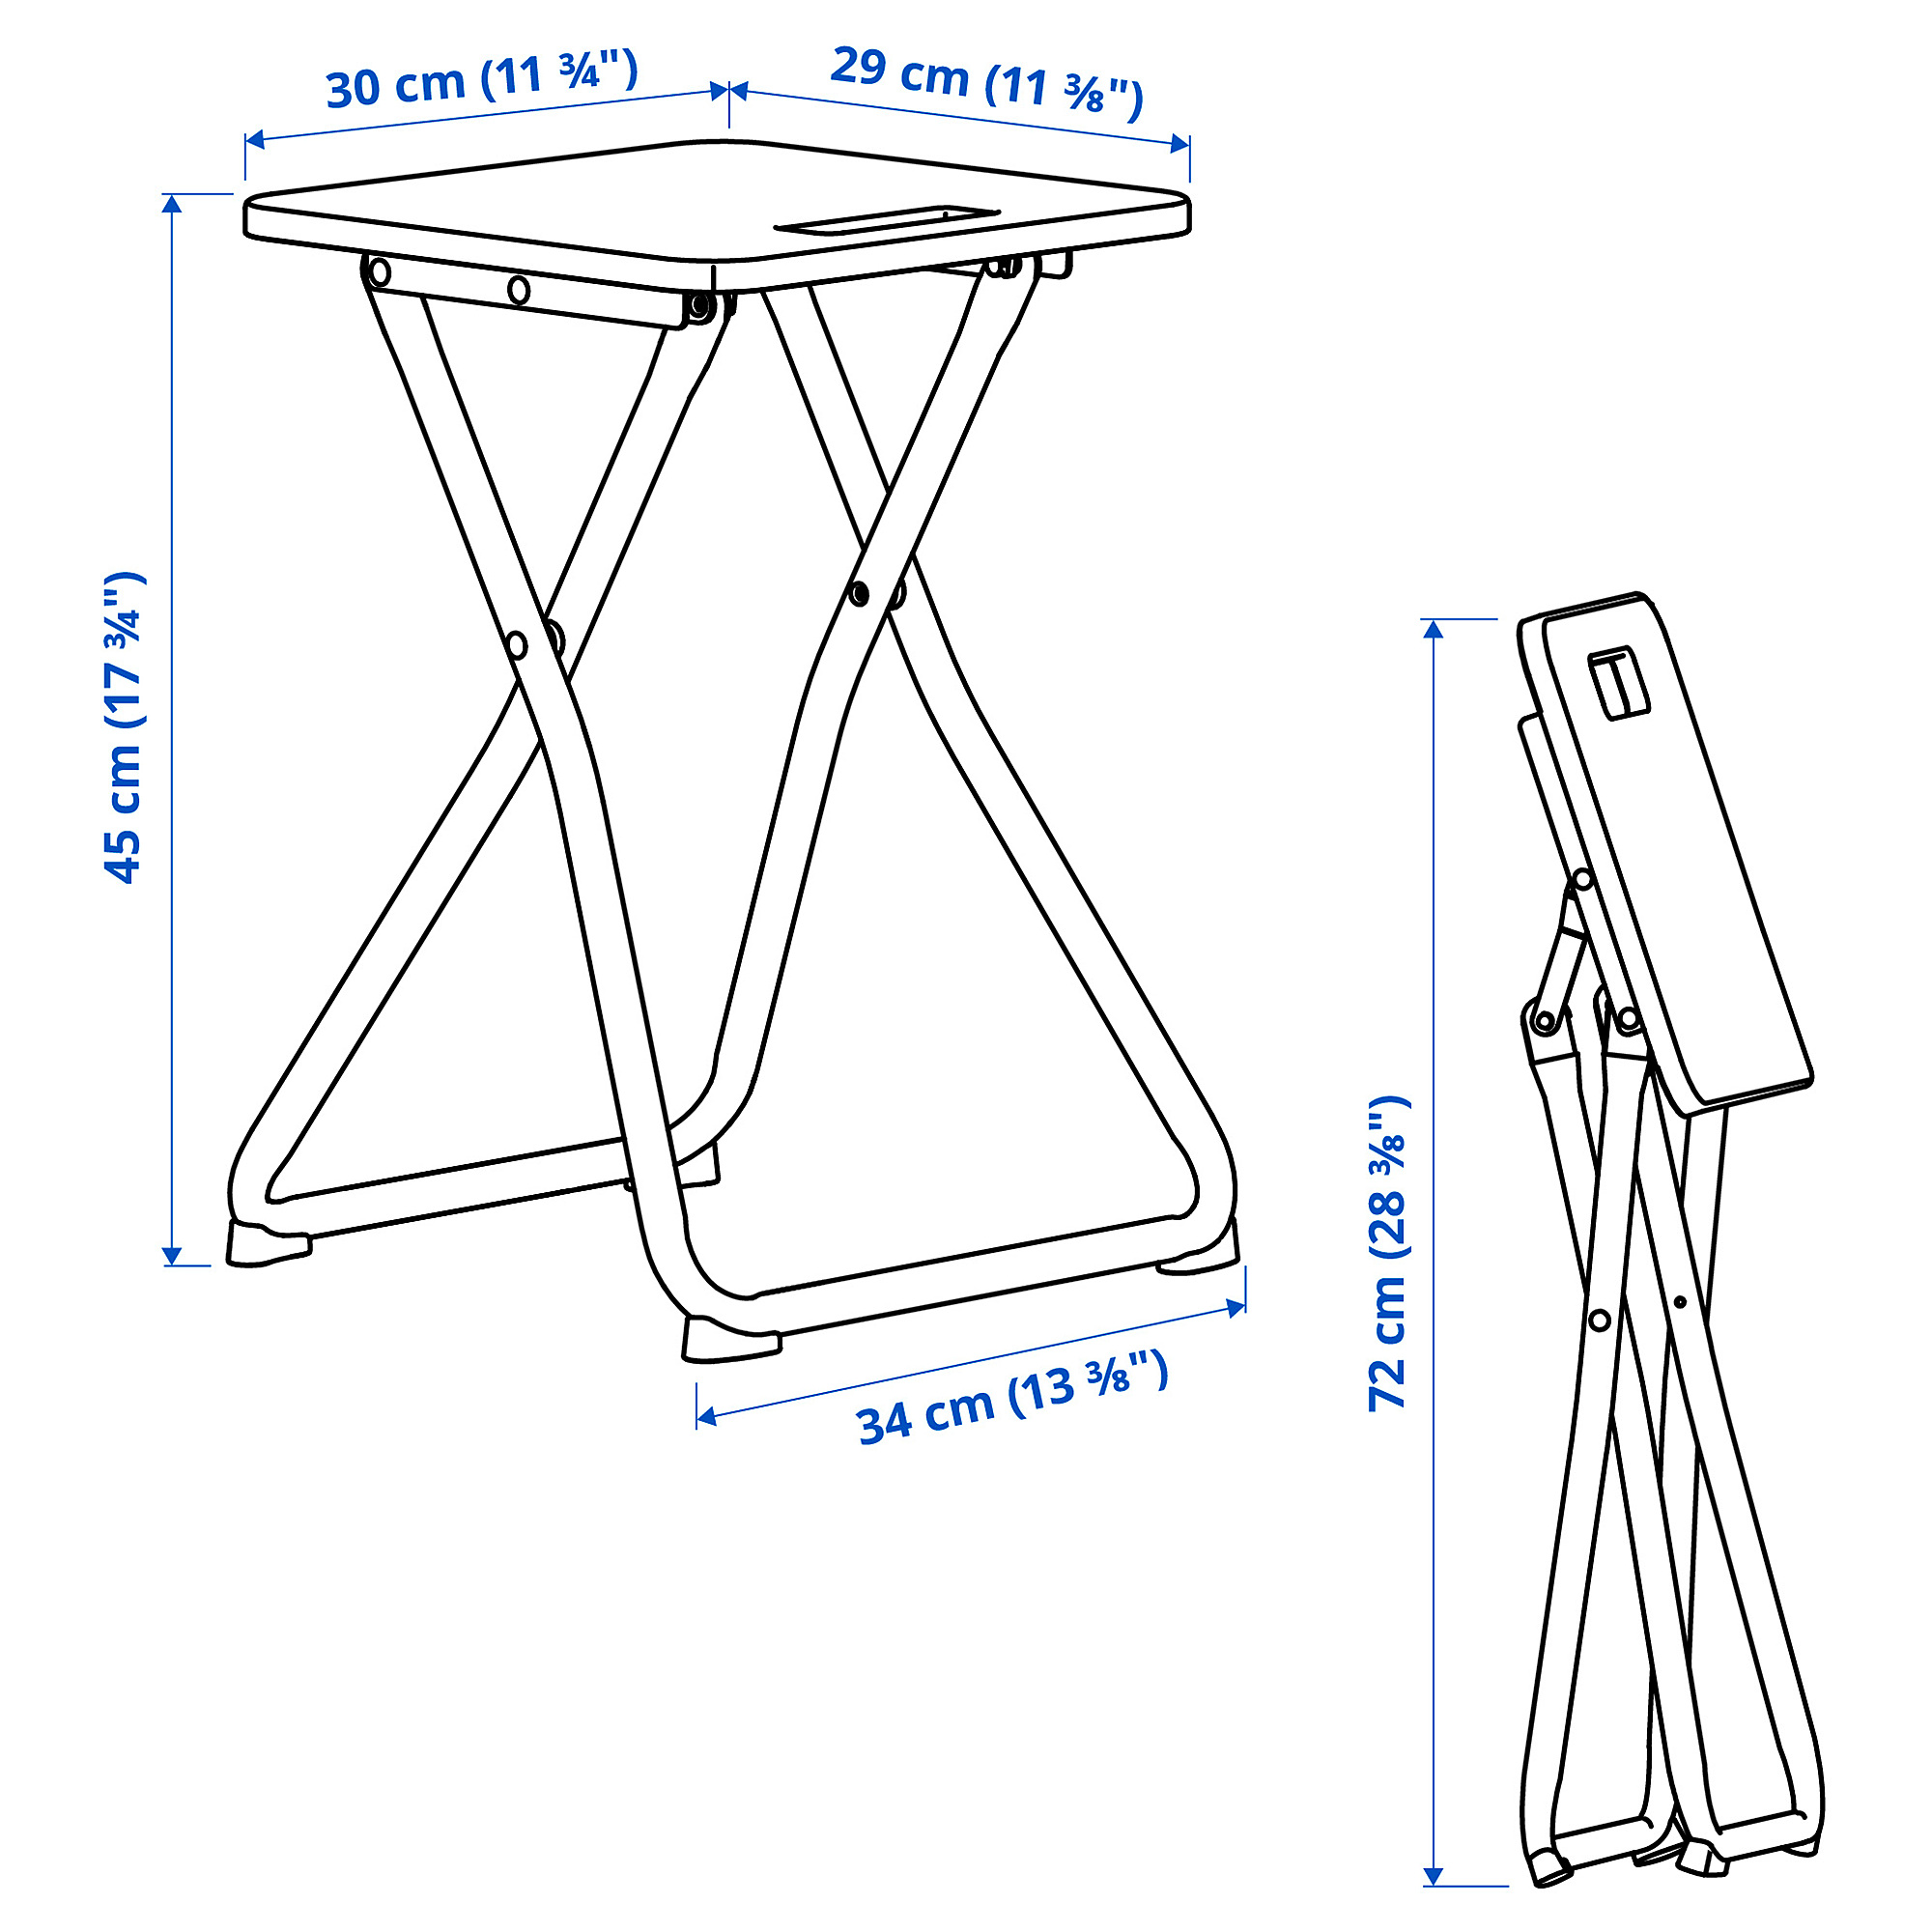 GUNDE folding stool